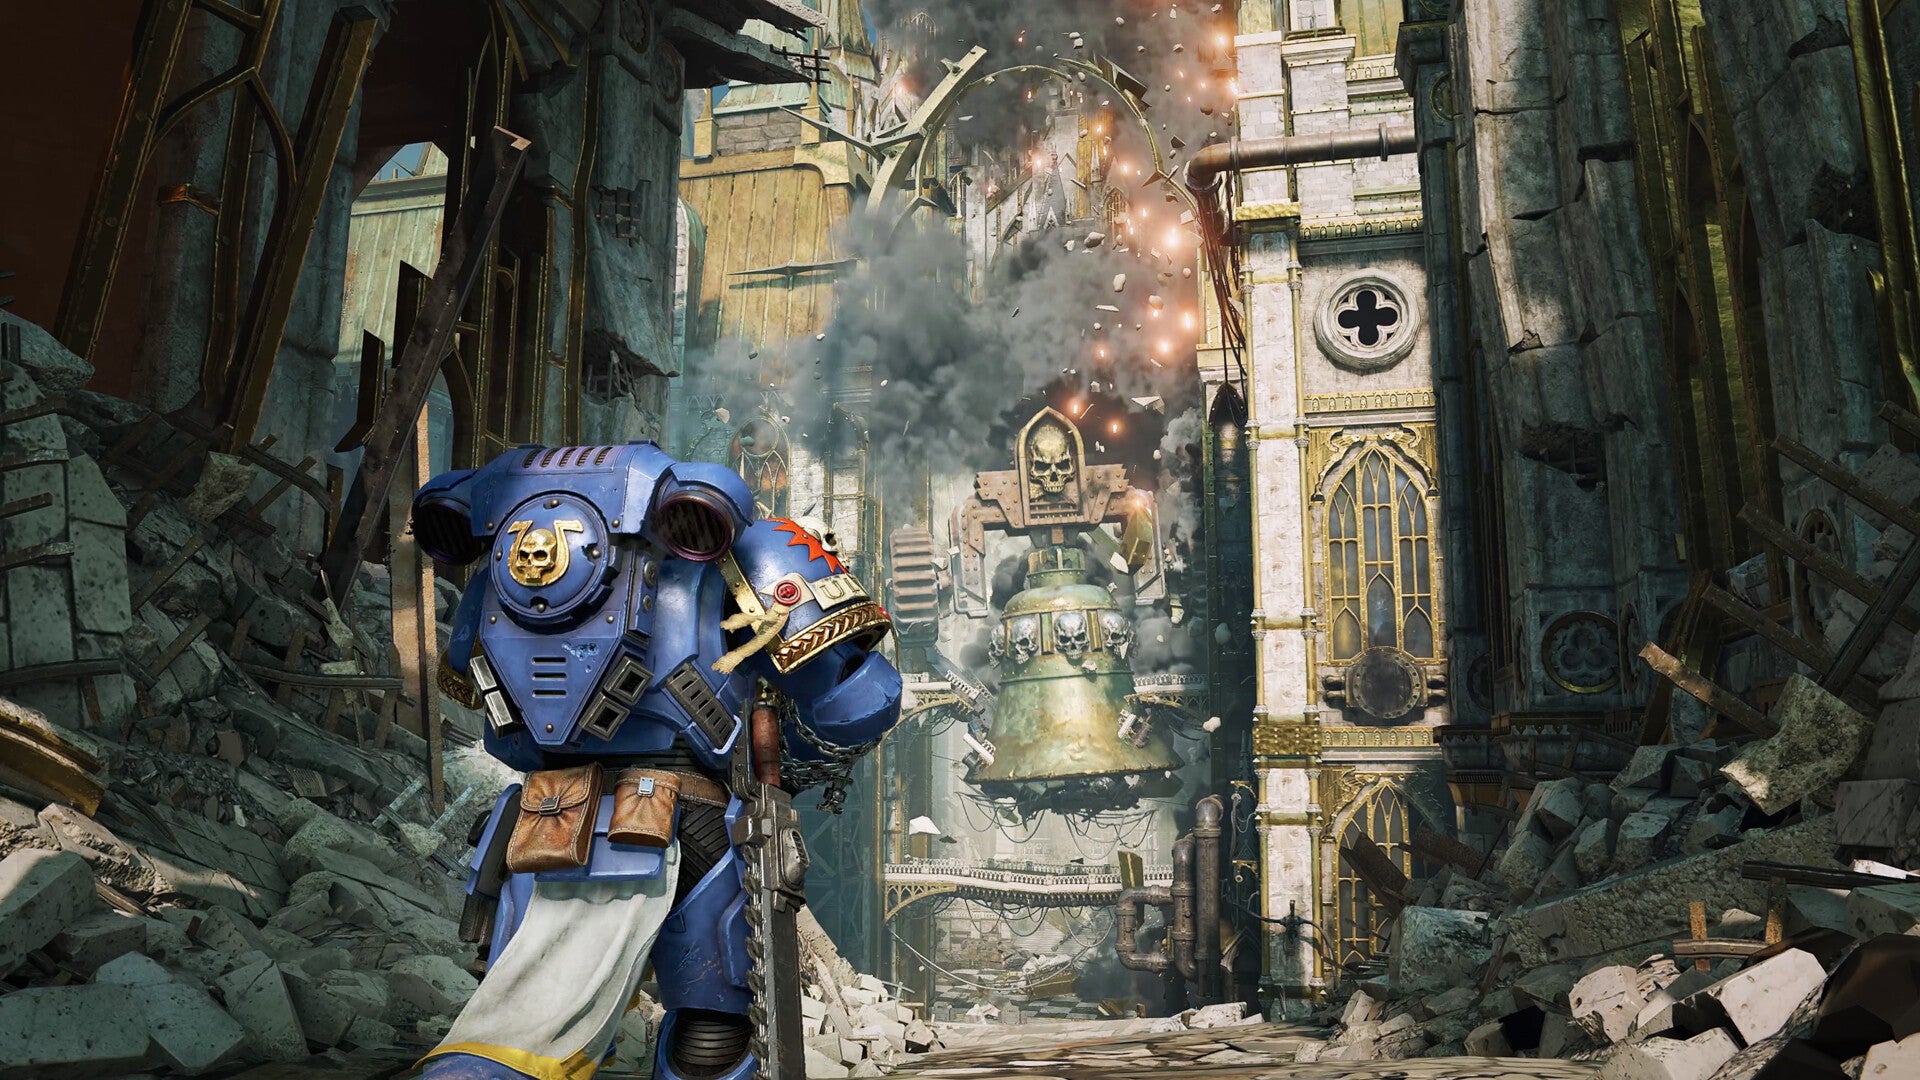 一个蓝色的星际战士向前走向一幢巨大而摇摇欲坠的建筑物。